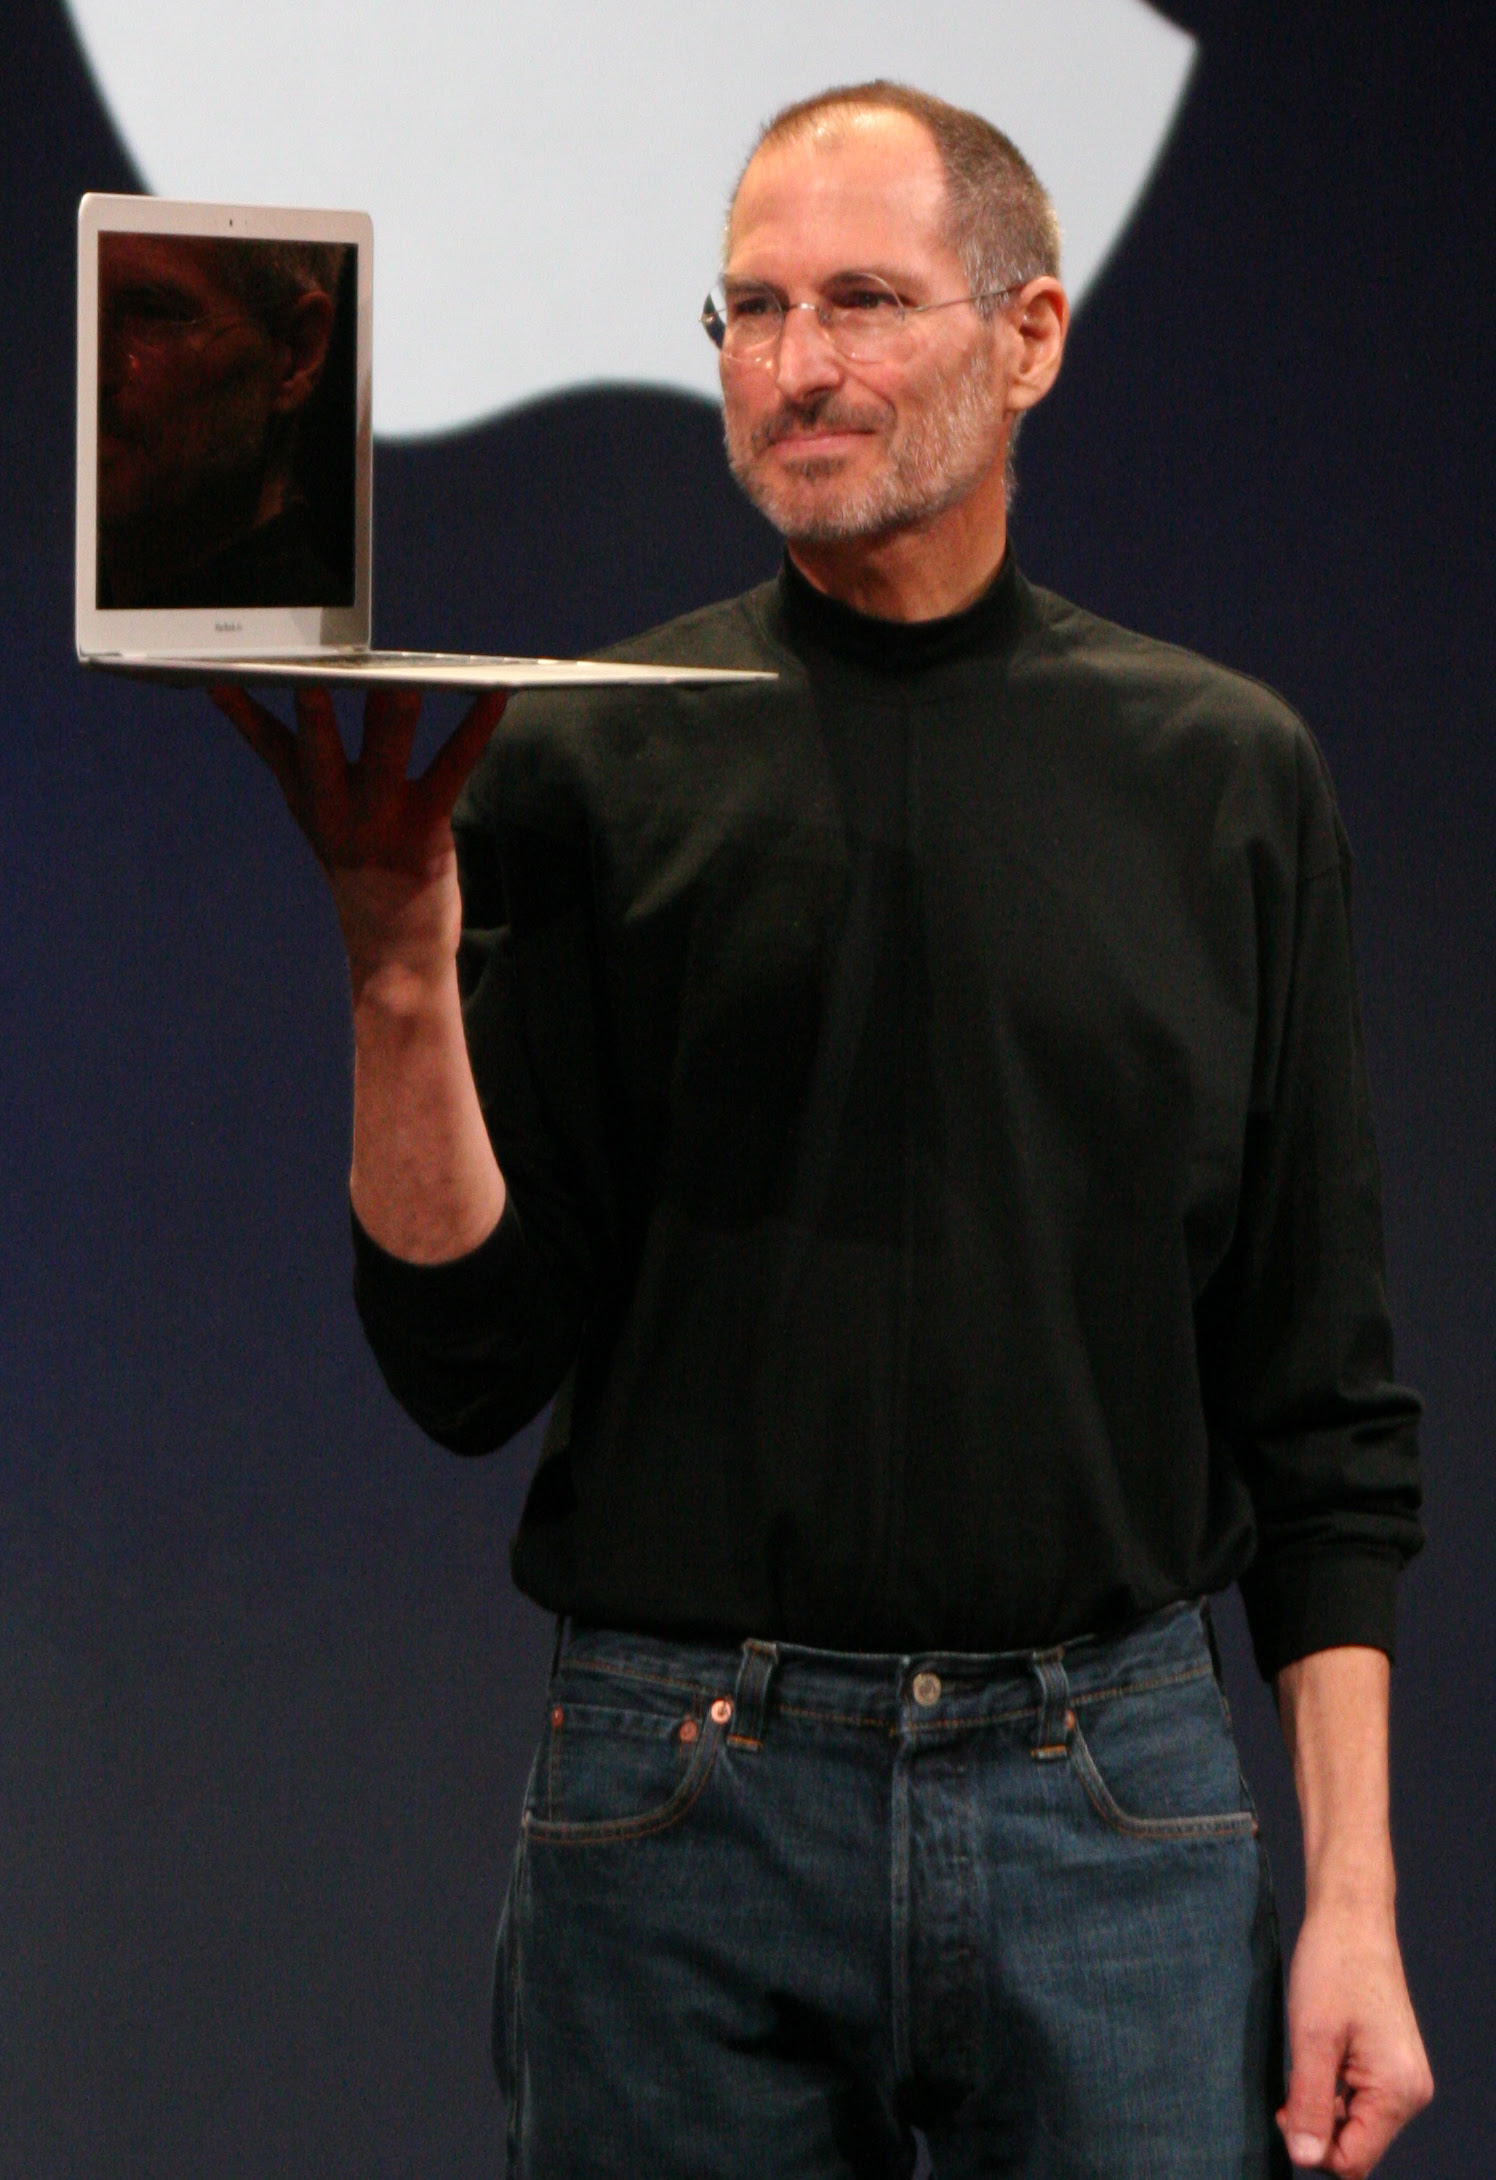 http://upload.wikimedia.org/wikipedia/commons/5/54/Steve_Jobs.jpg